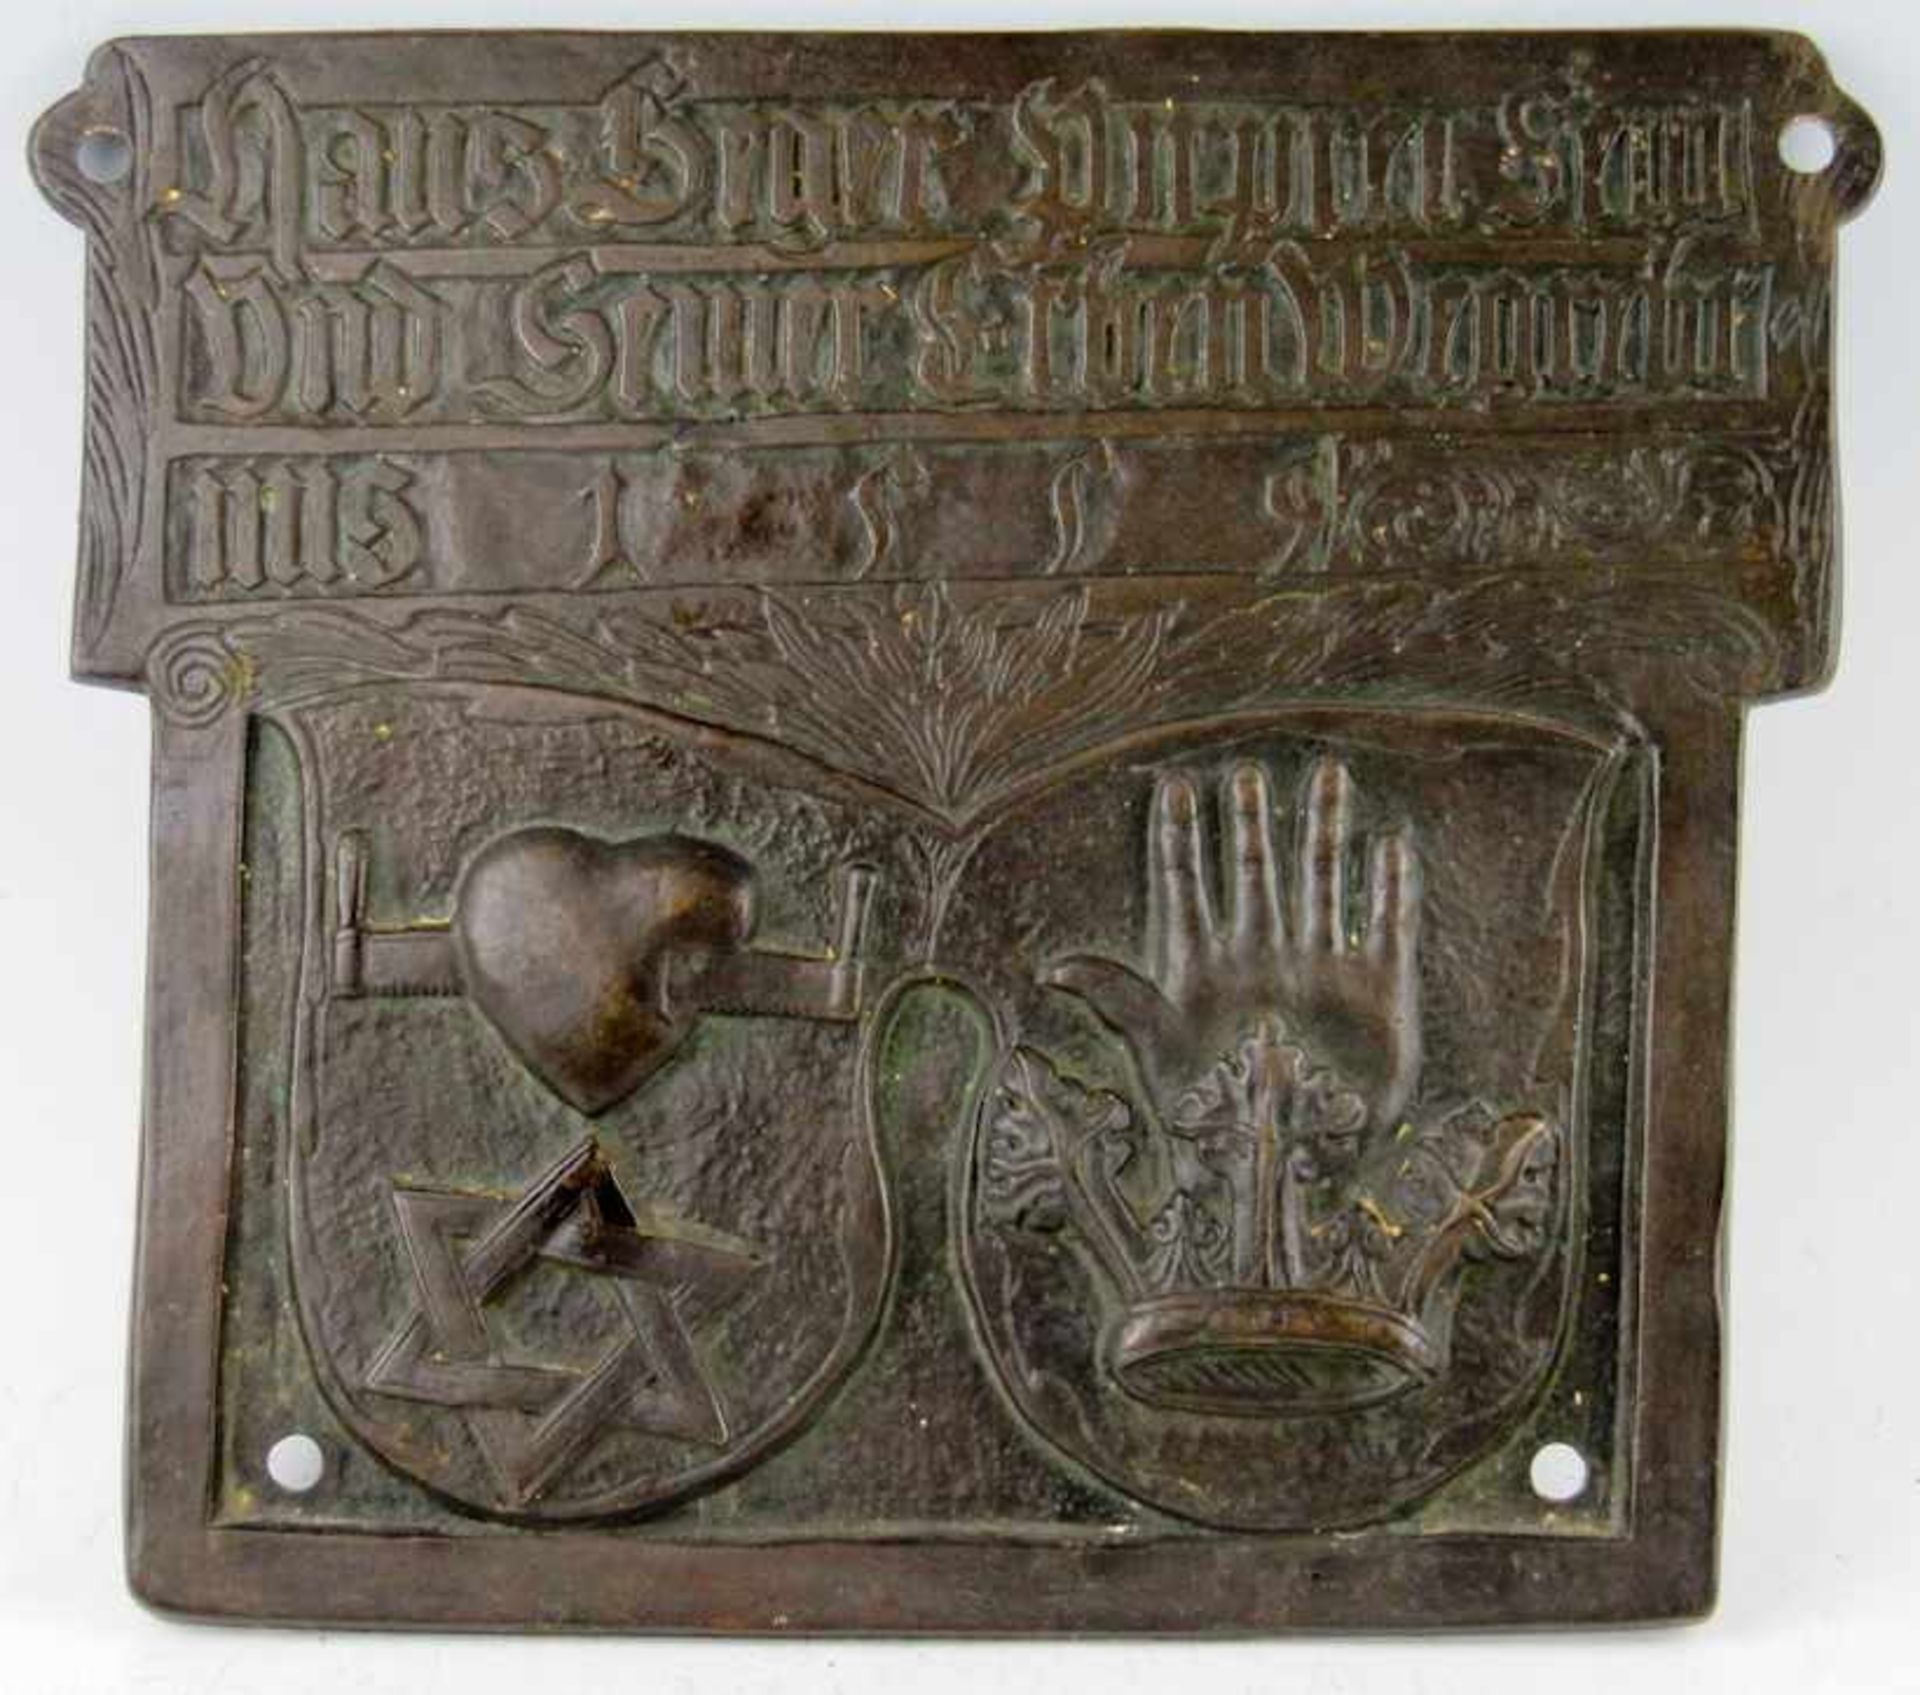 Wappenschild im Renaissancestil. Bronze, dunkelbraun patiniert. Oberhalb Sinnspruch und Datierung